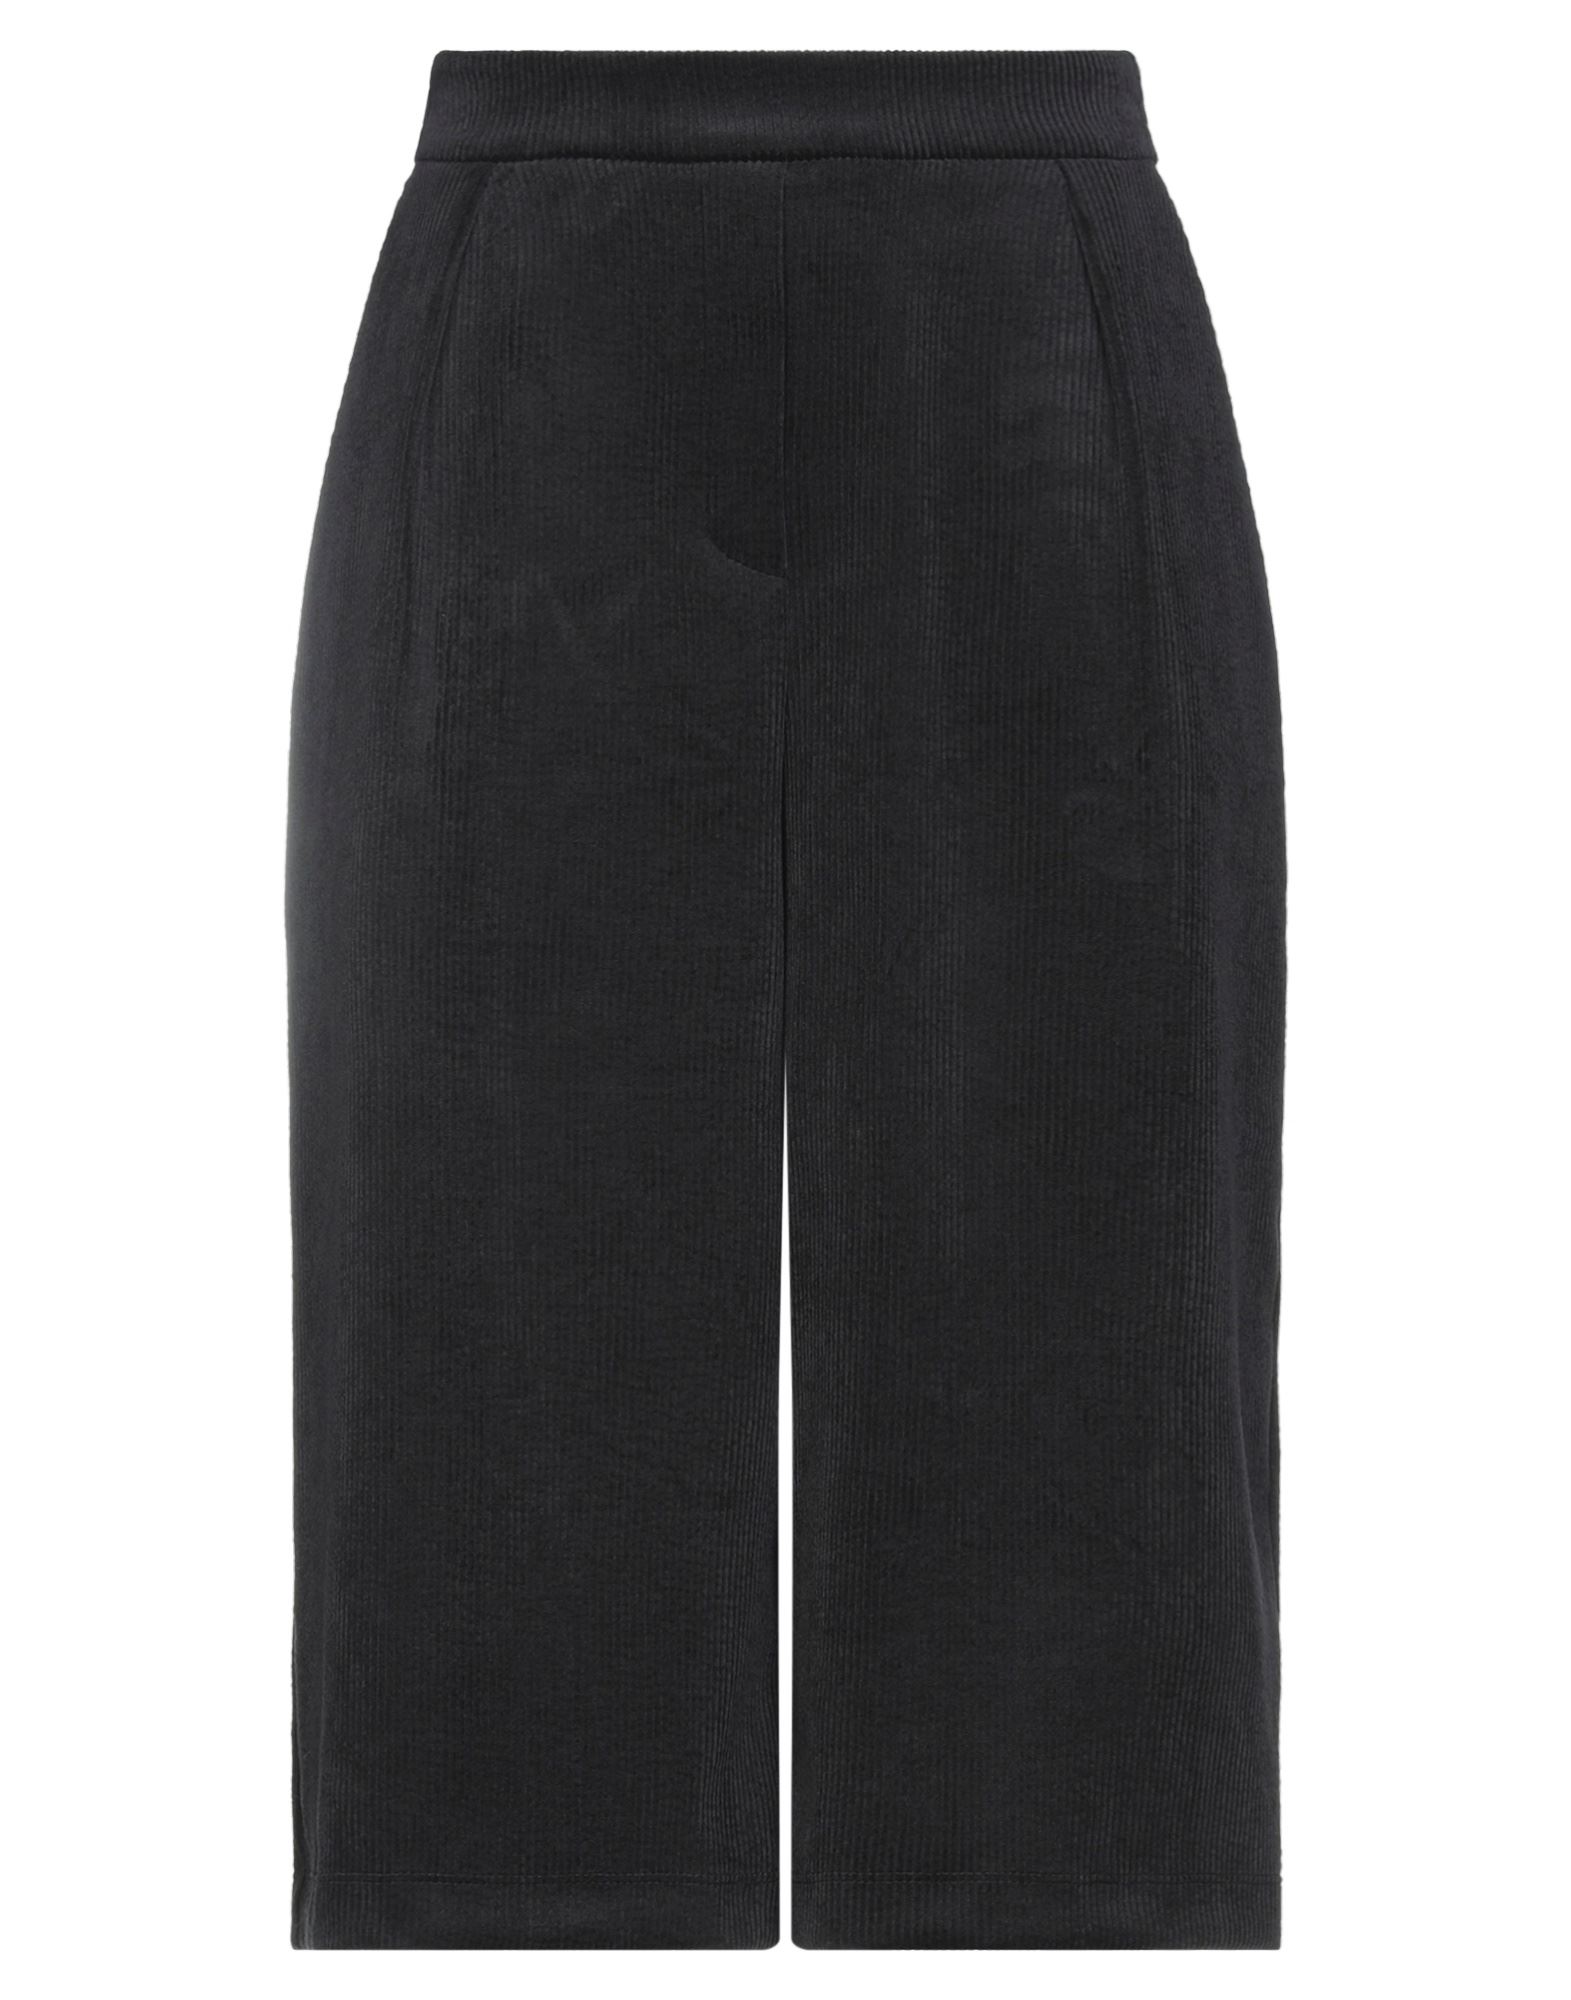 8pm Woman Pants Black Size S Polyester, Nylon, Elastane